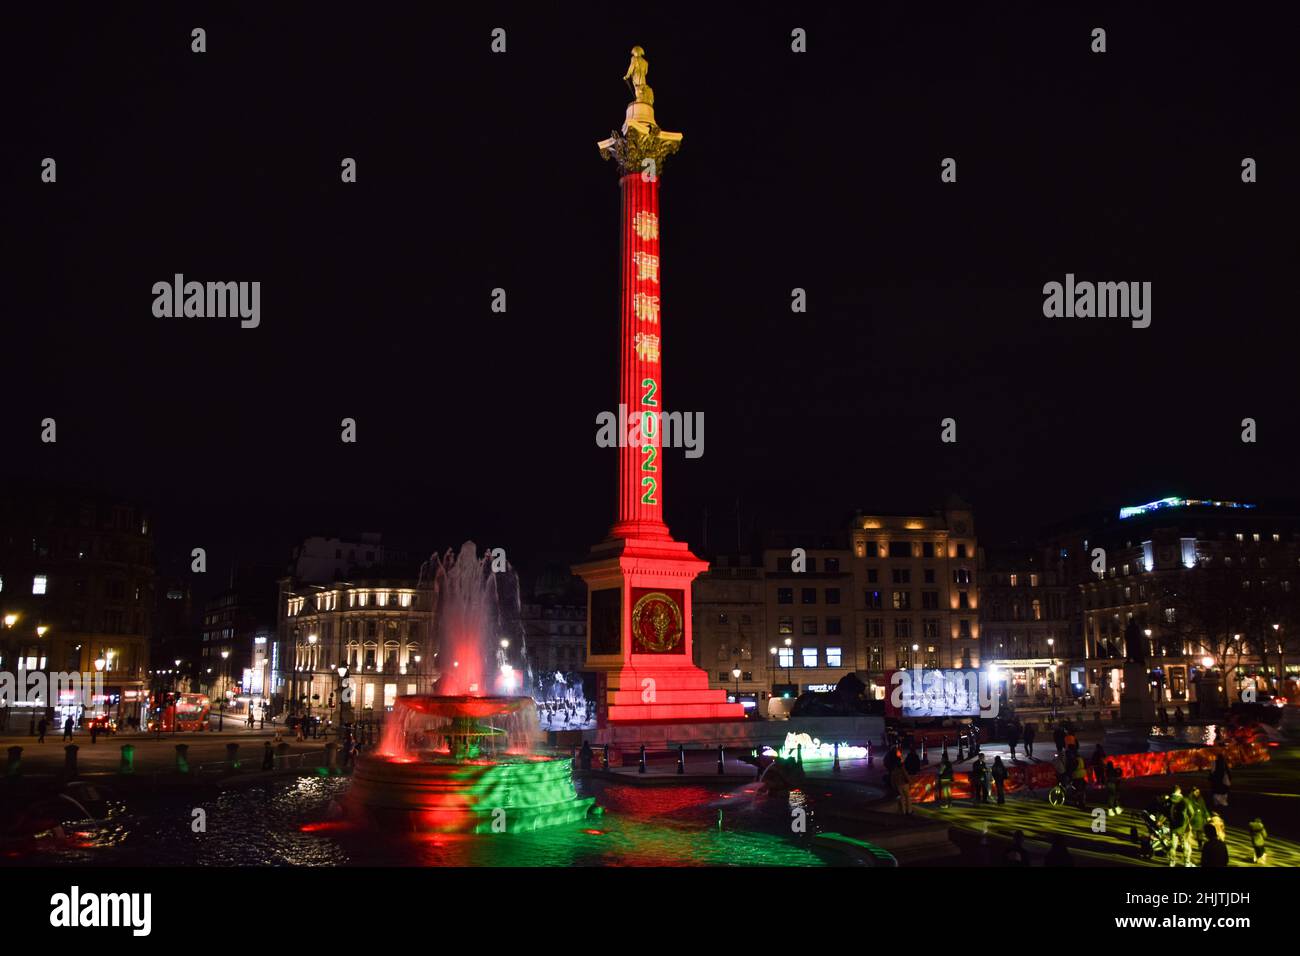 Londres, Royaume-Uni 31st janvier 2022.'2022' est projeté sur la colonne de Nelson à Trafalgar Square pour célébrer le nouvel an chinois.Cette année marque l'année du tigre.Credit: Vuk Valcic / Alamy Live News Banque D'Images